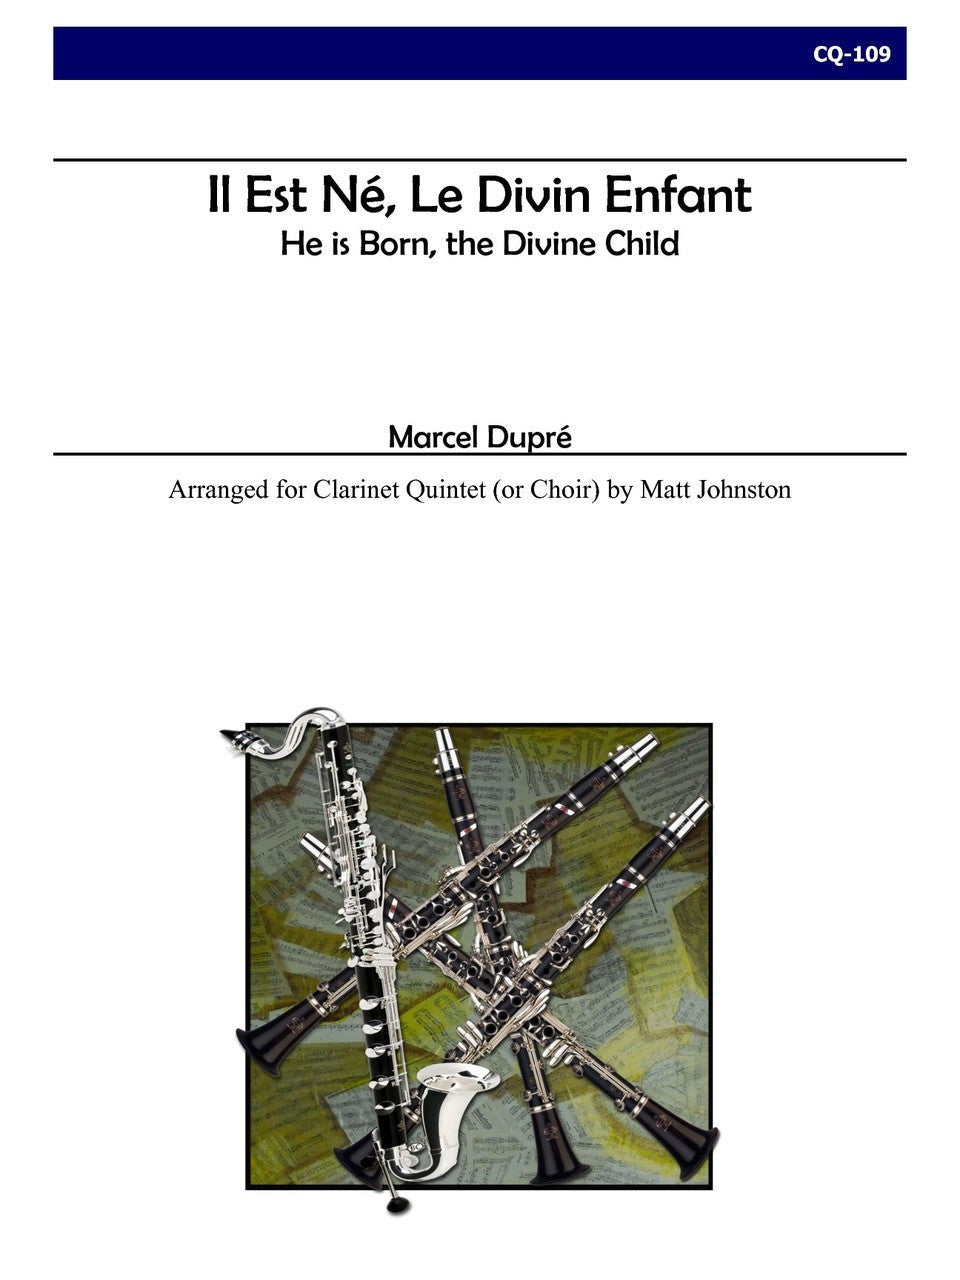 Dupre (Matt Johnston) - Il Est Né Le Divin Enfant for Clarinet Quintet